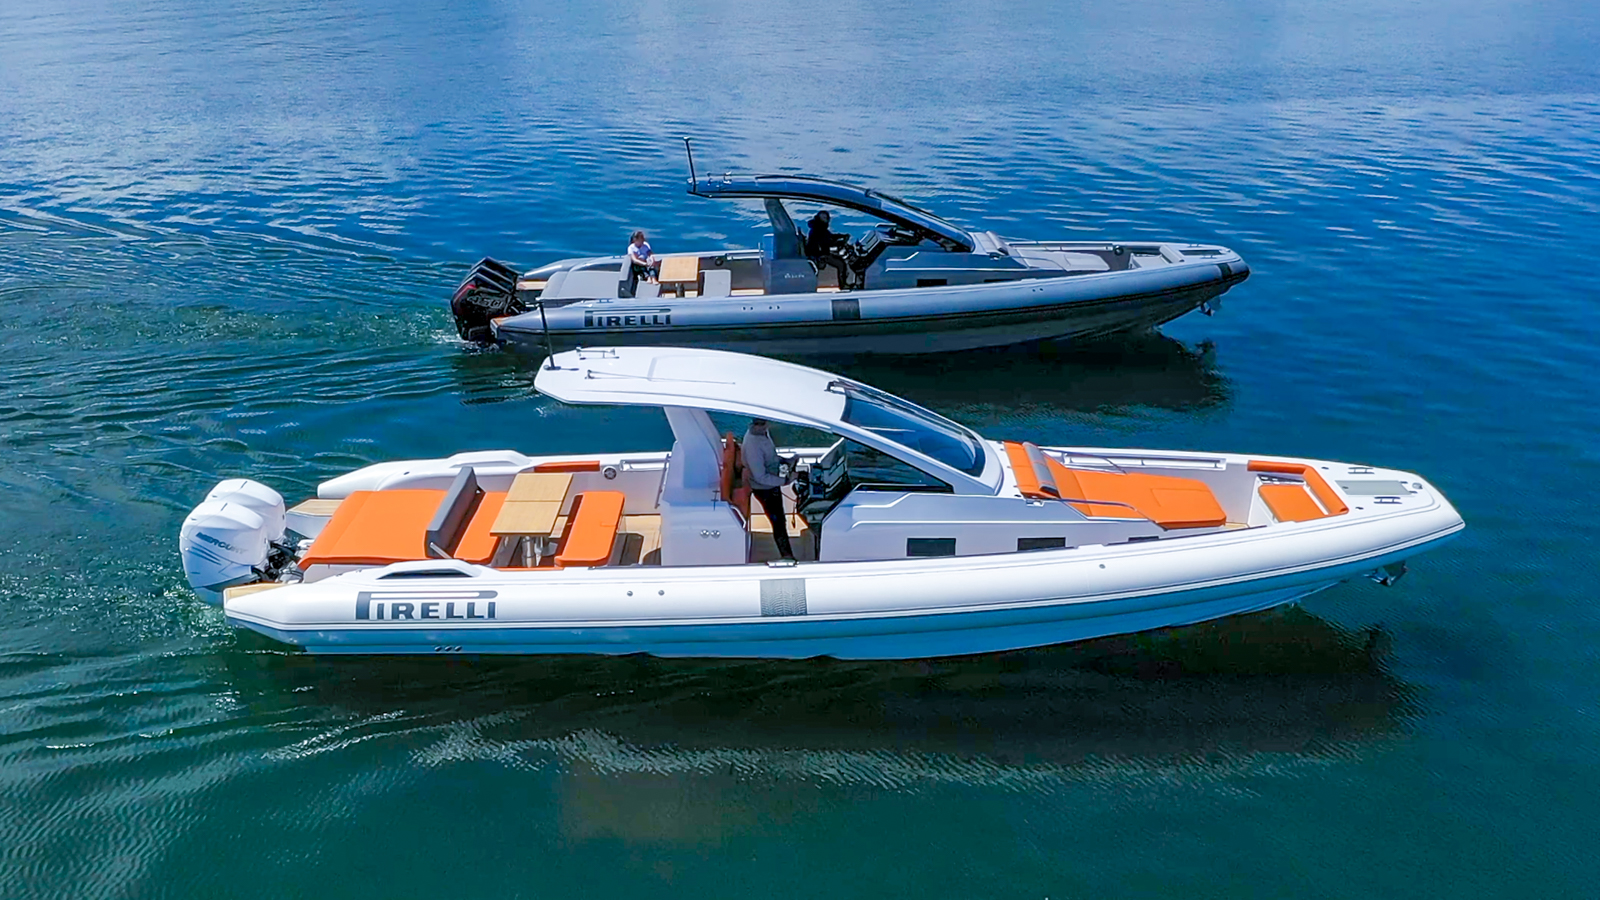 Sacs Tecnorib en el Palma International Boat Show 2023 con todas las novedades de los speedboats Pirelli